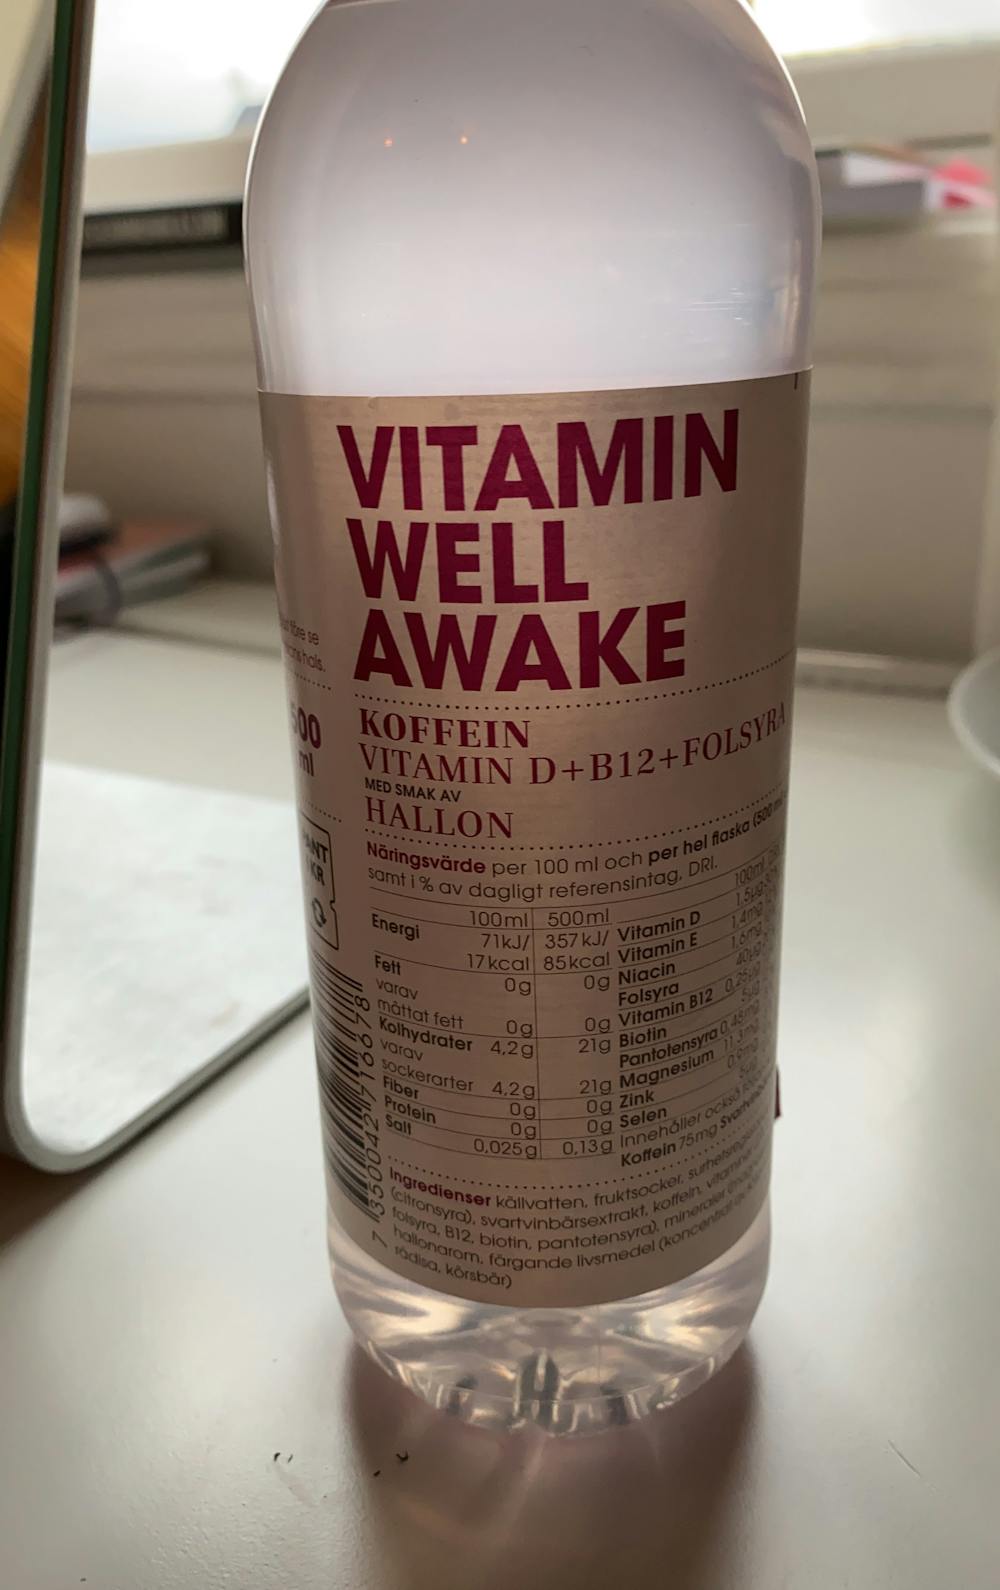 Awake, hallon, Vitamin well